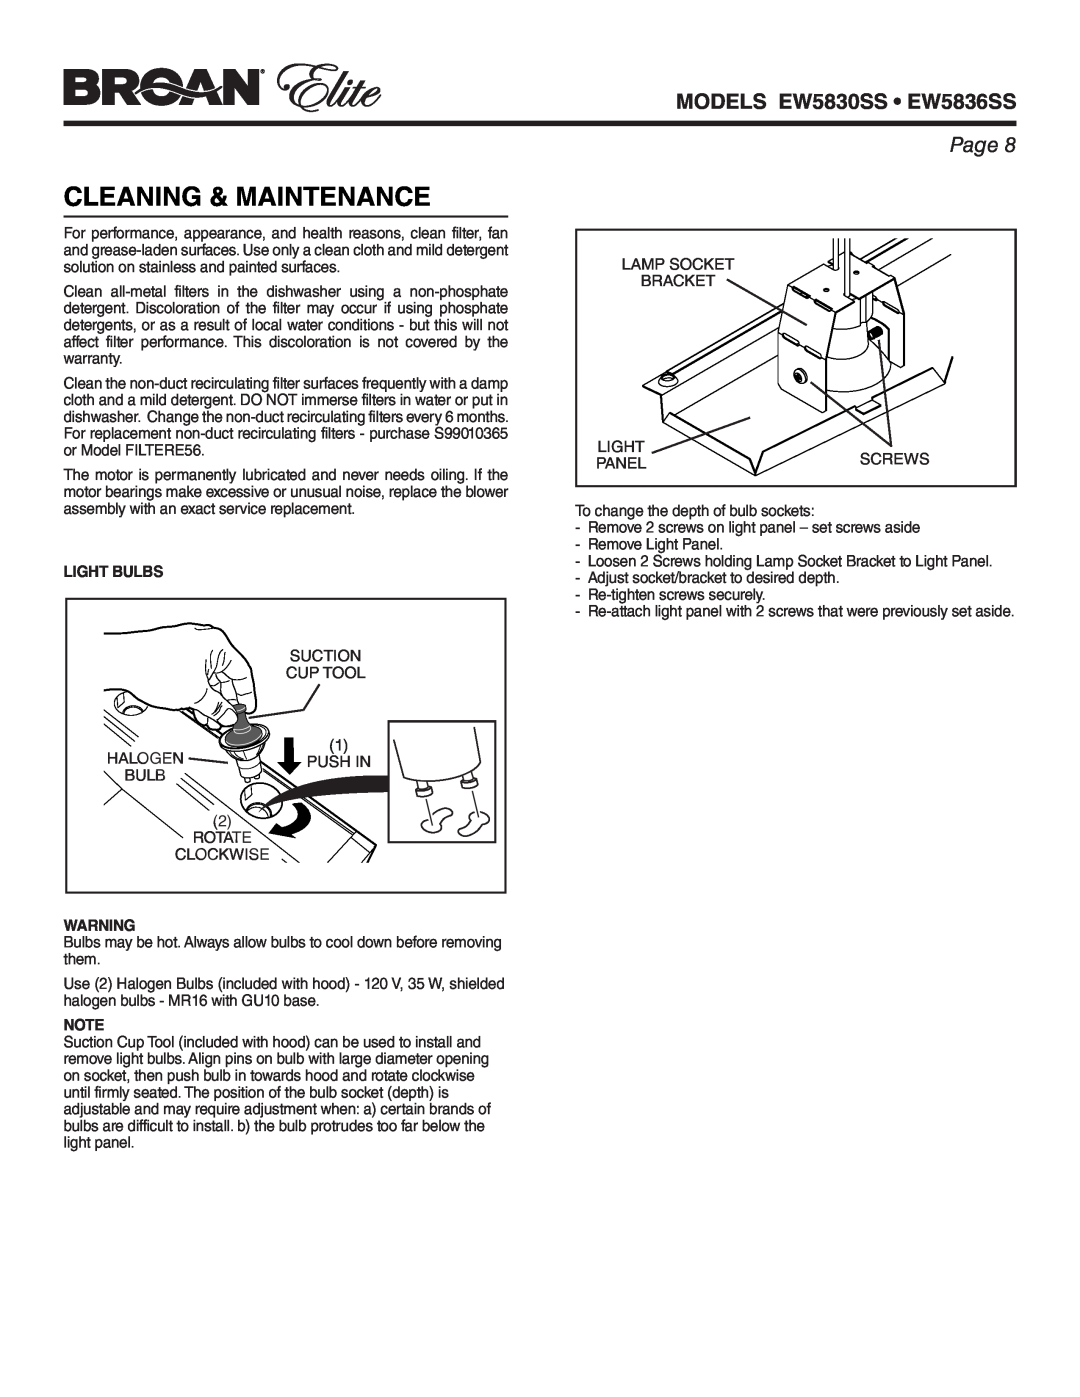 Broan warranty Cleaning & Maintenance, Light Bulbs, MODELS EW5830SS EW5836SS, Page 